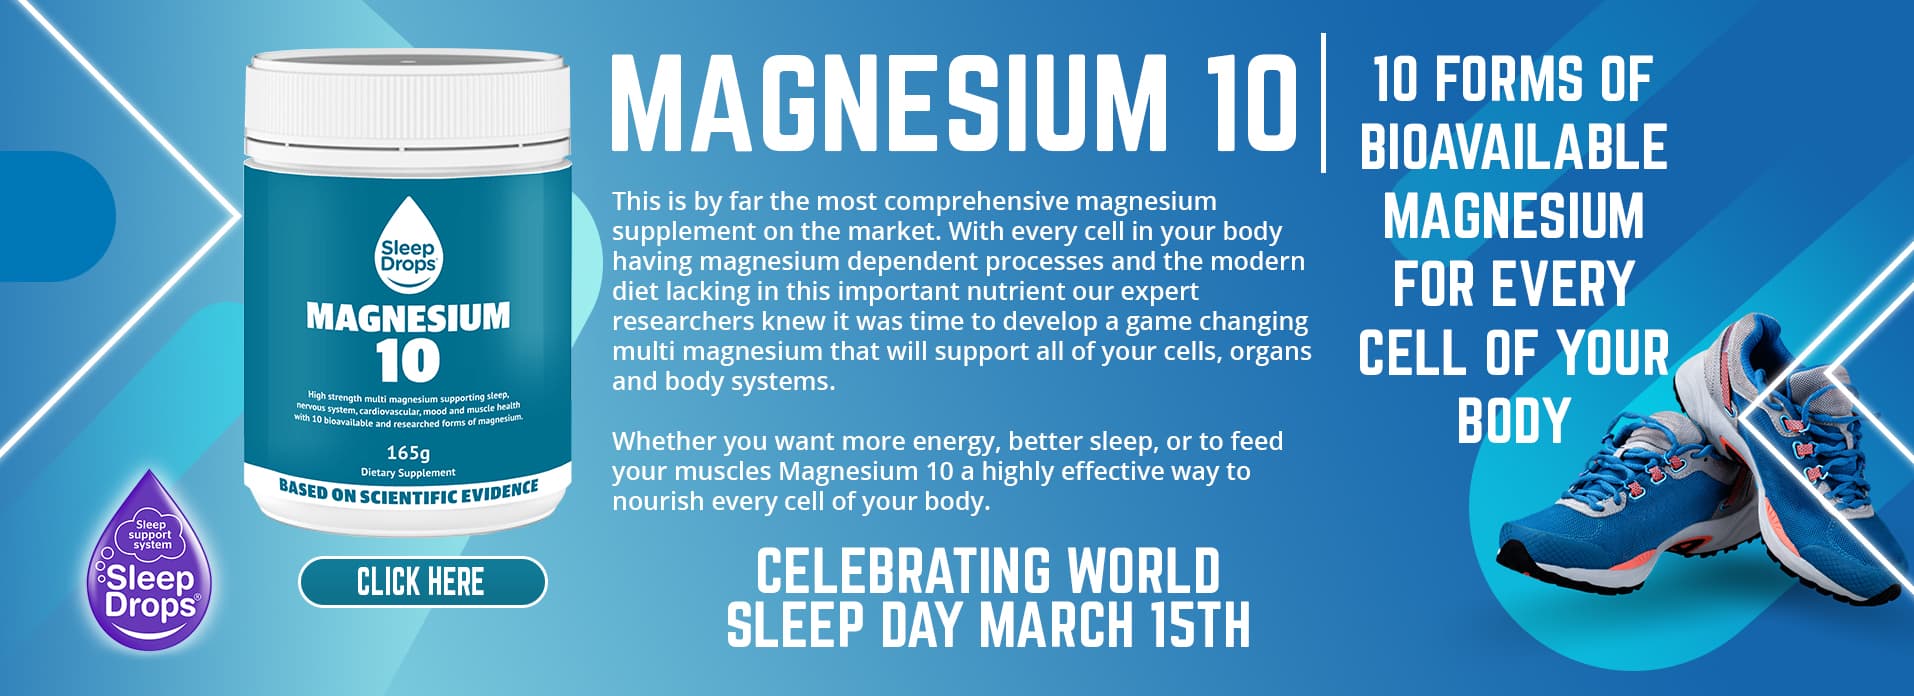 magnesium 10